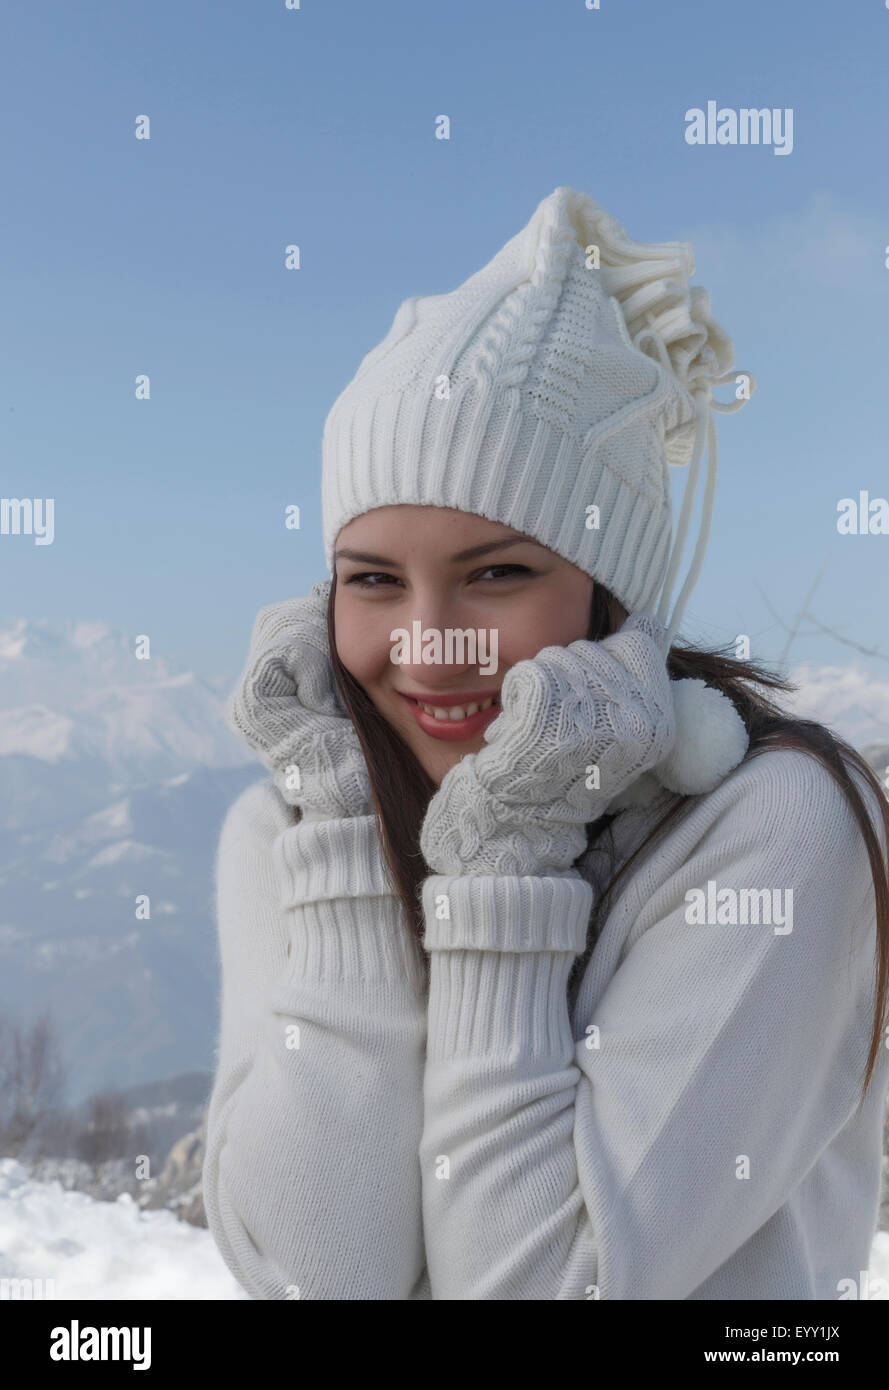 Mujer con ropa de abrigo poniéndose guantes en invierno con nieve